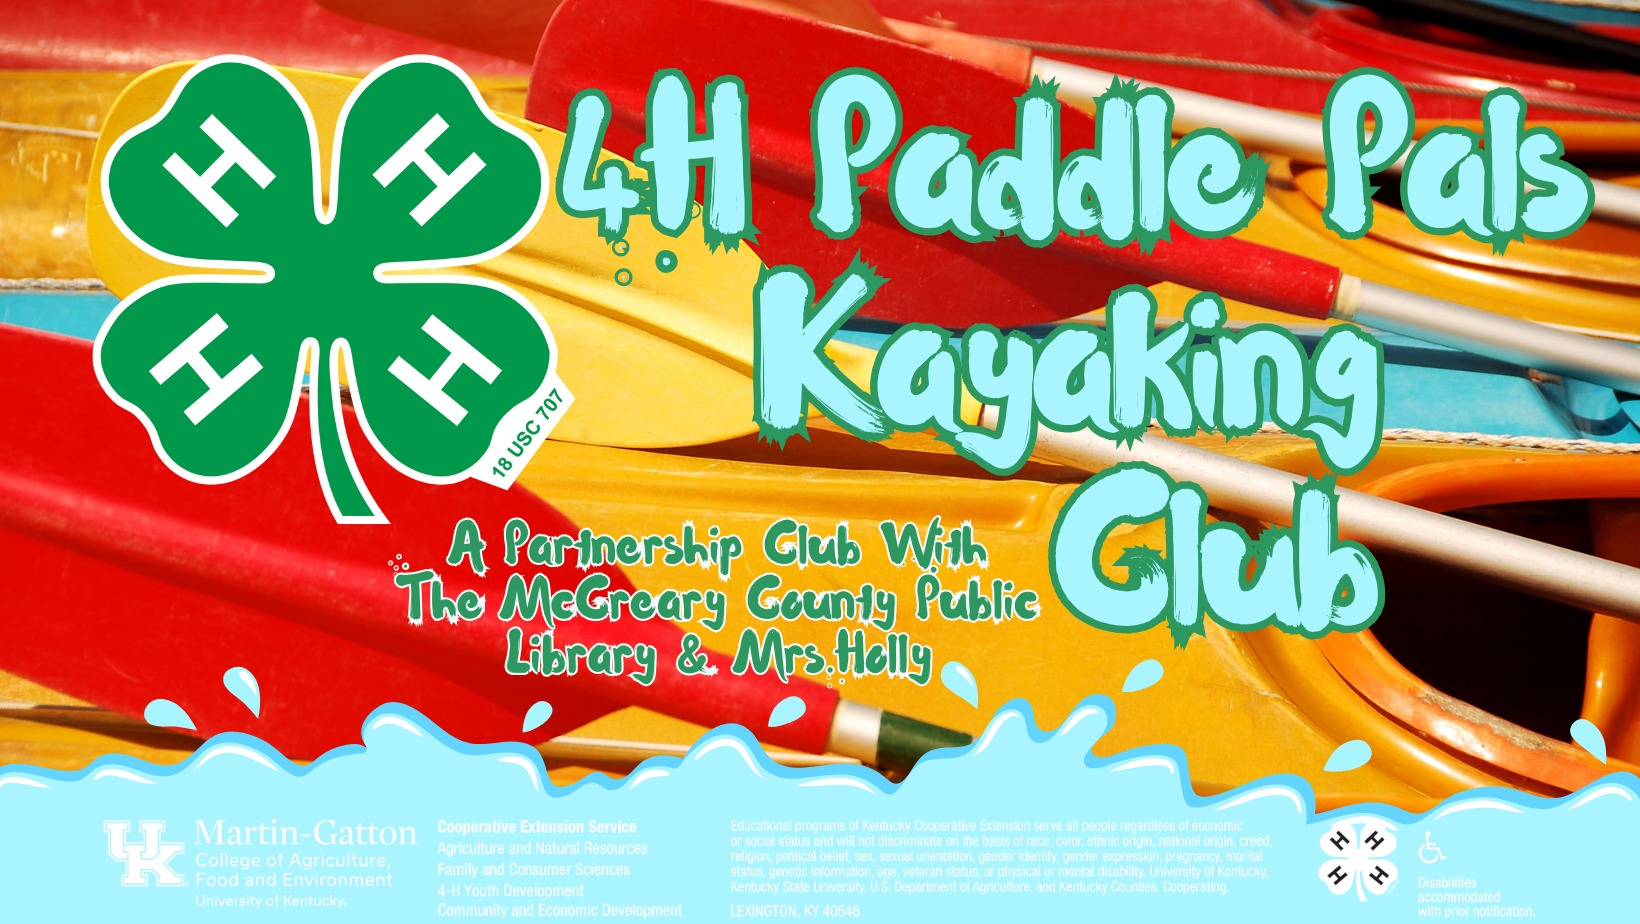 4-H Paddle Pals Kayaking Club 